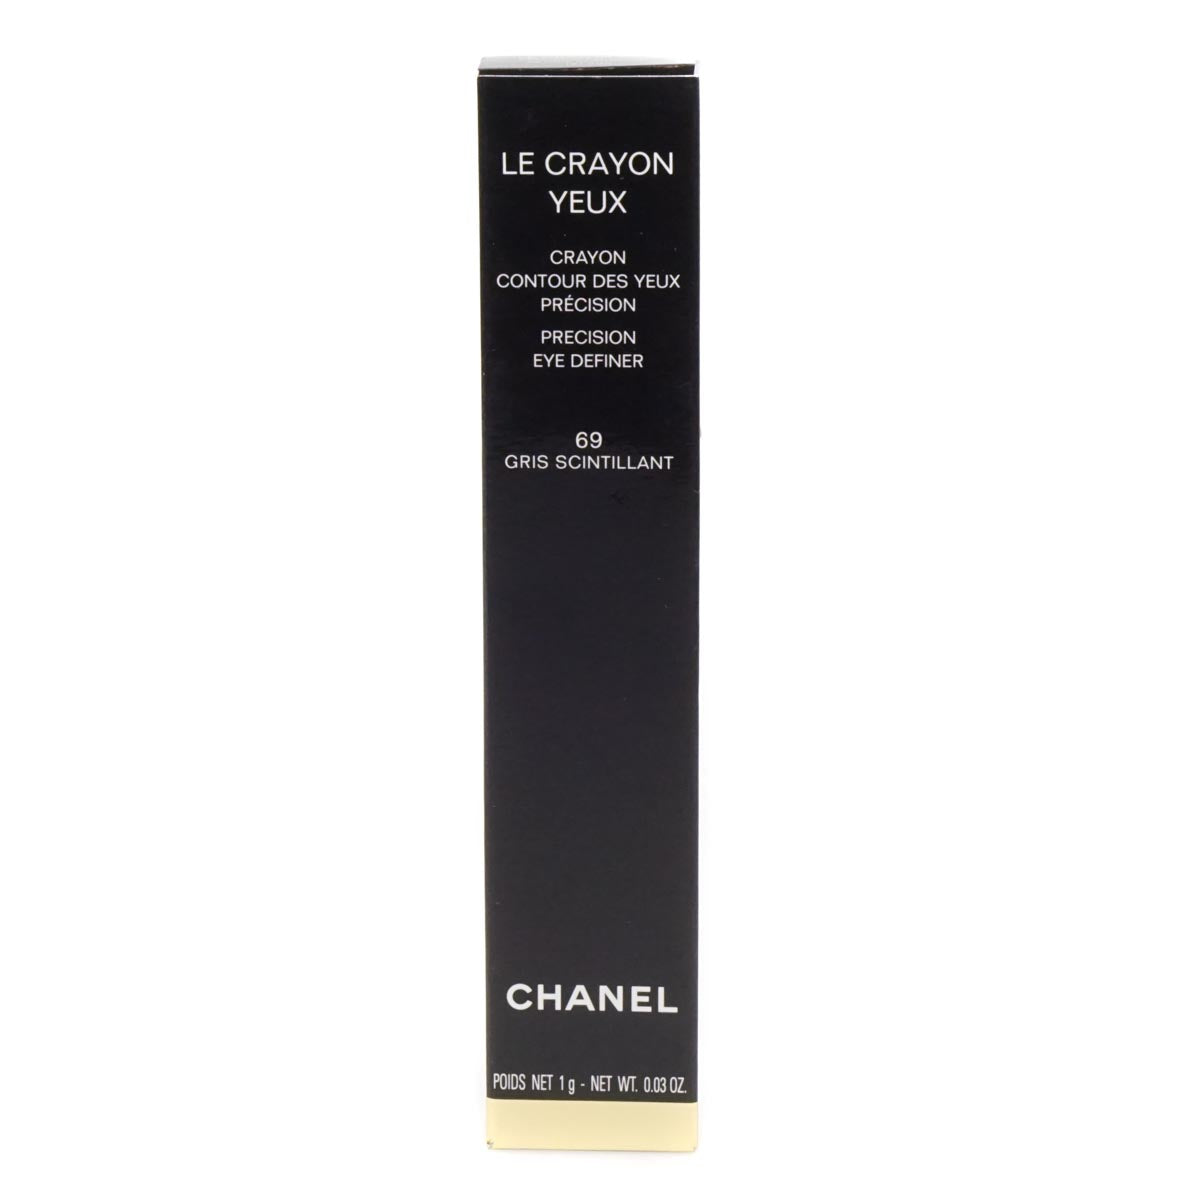 Chanel Le Crayon Levres Precision Eye Definer 69 Gris Scintillant